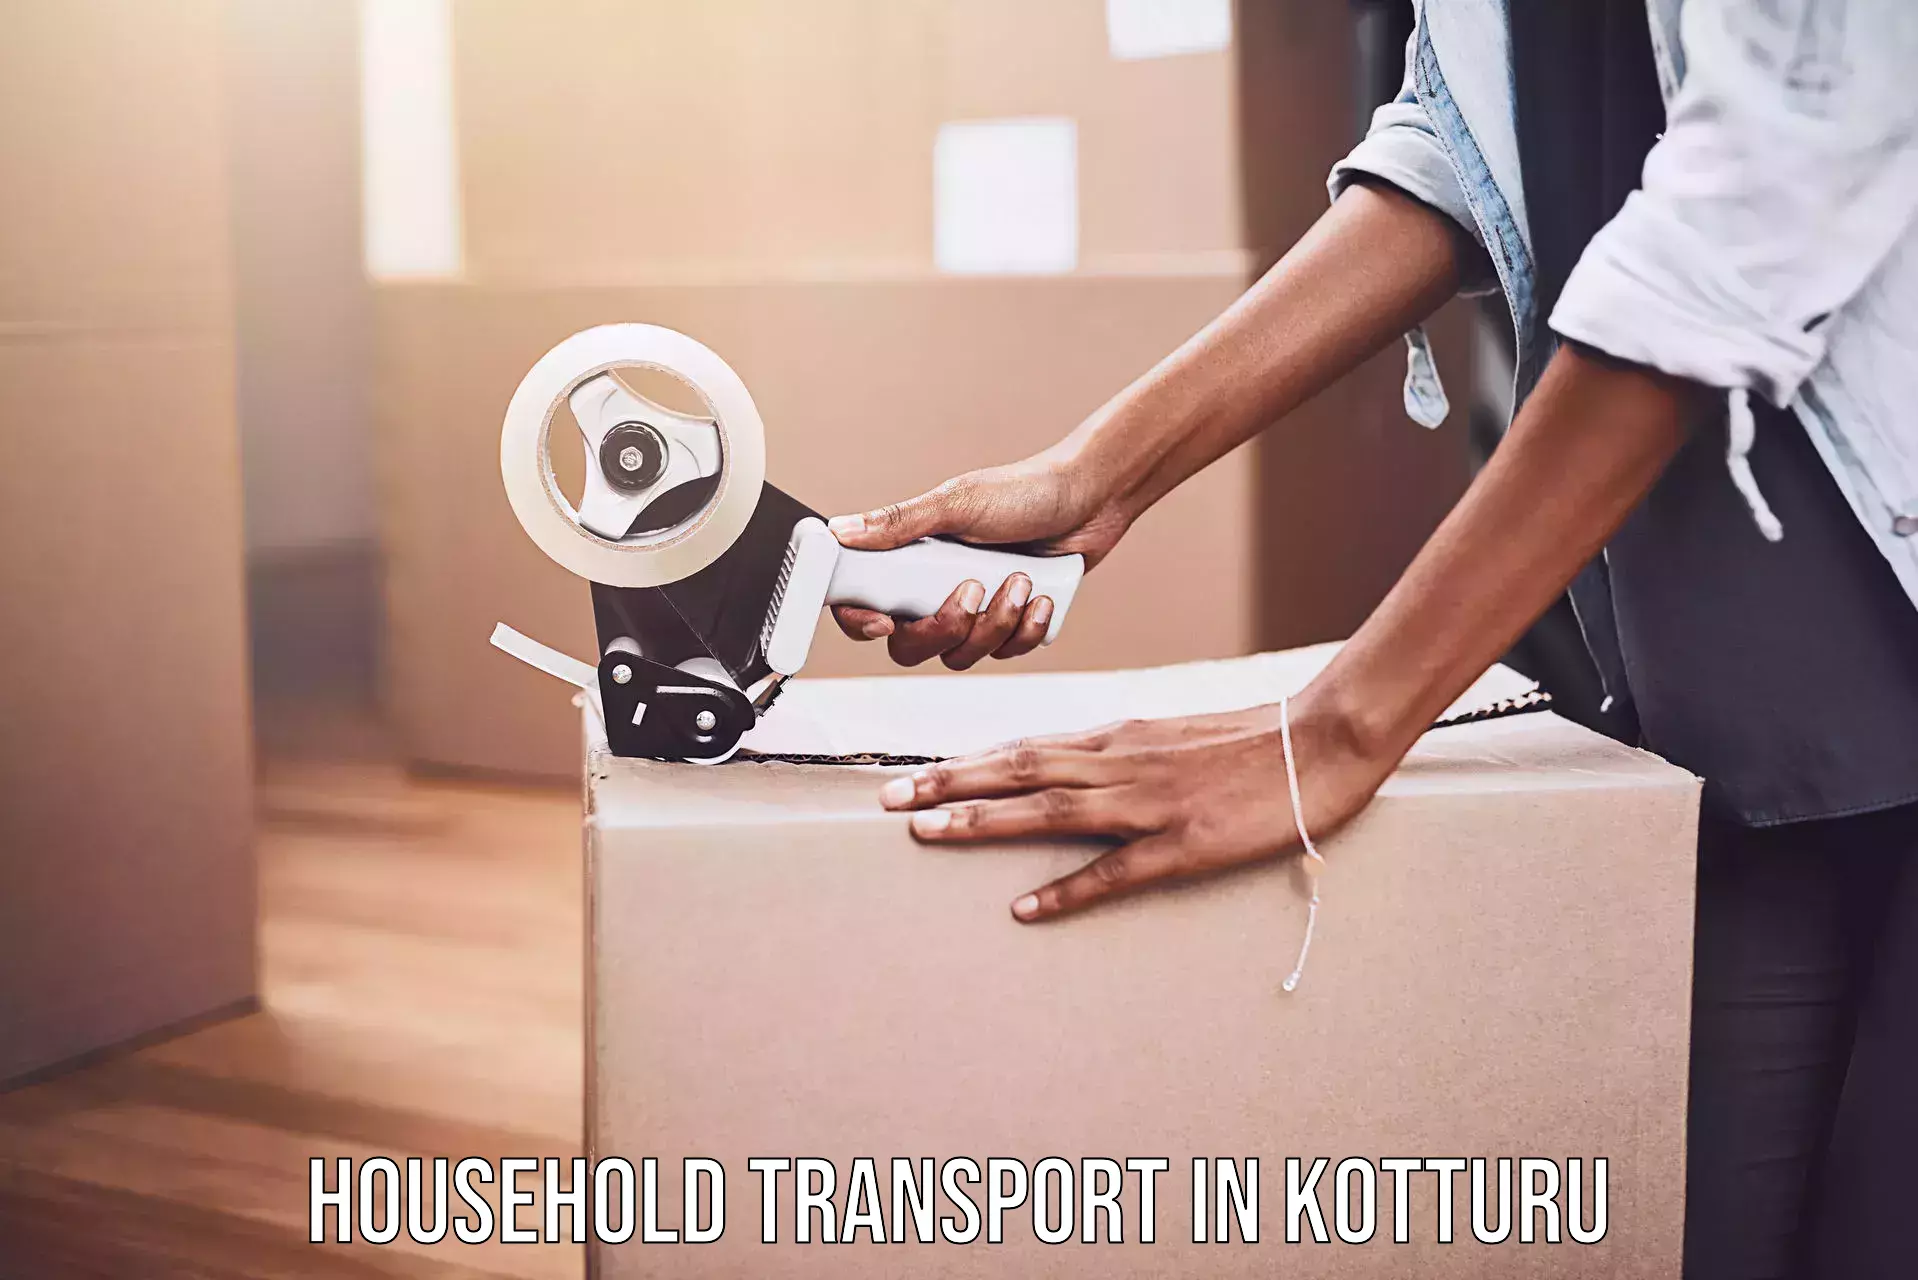 Furniture transport experts in Kotturu